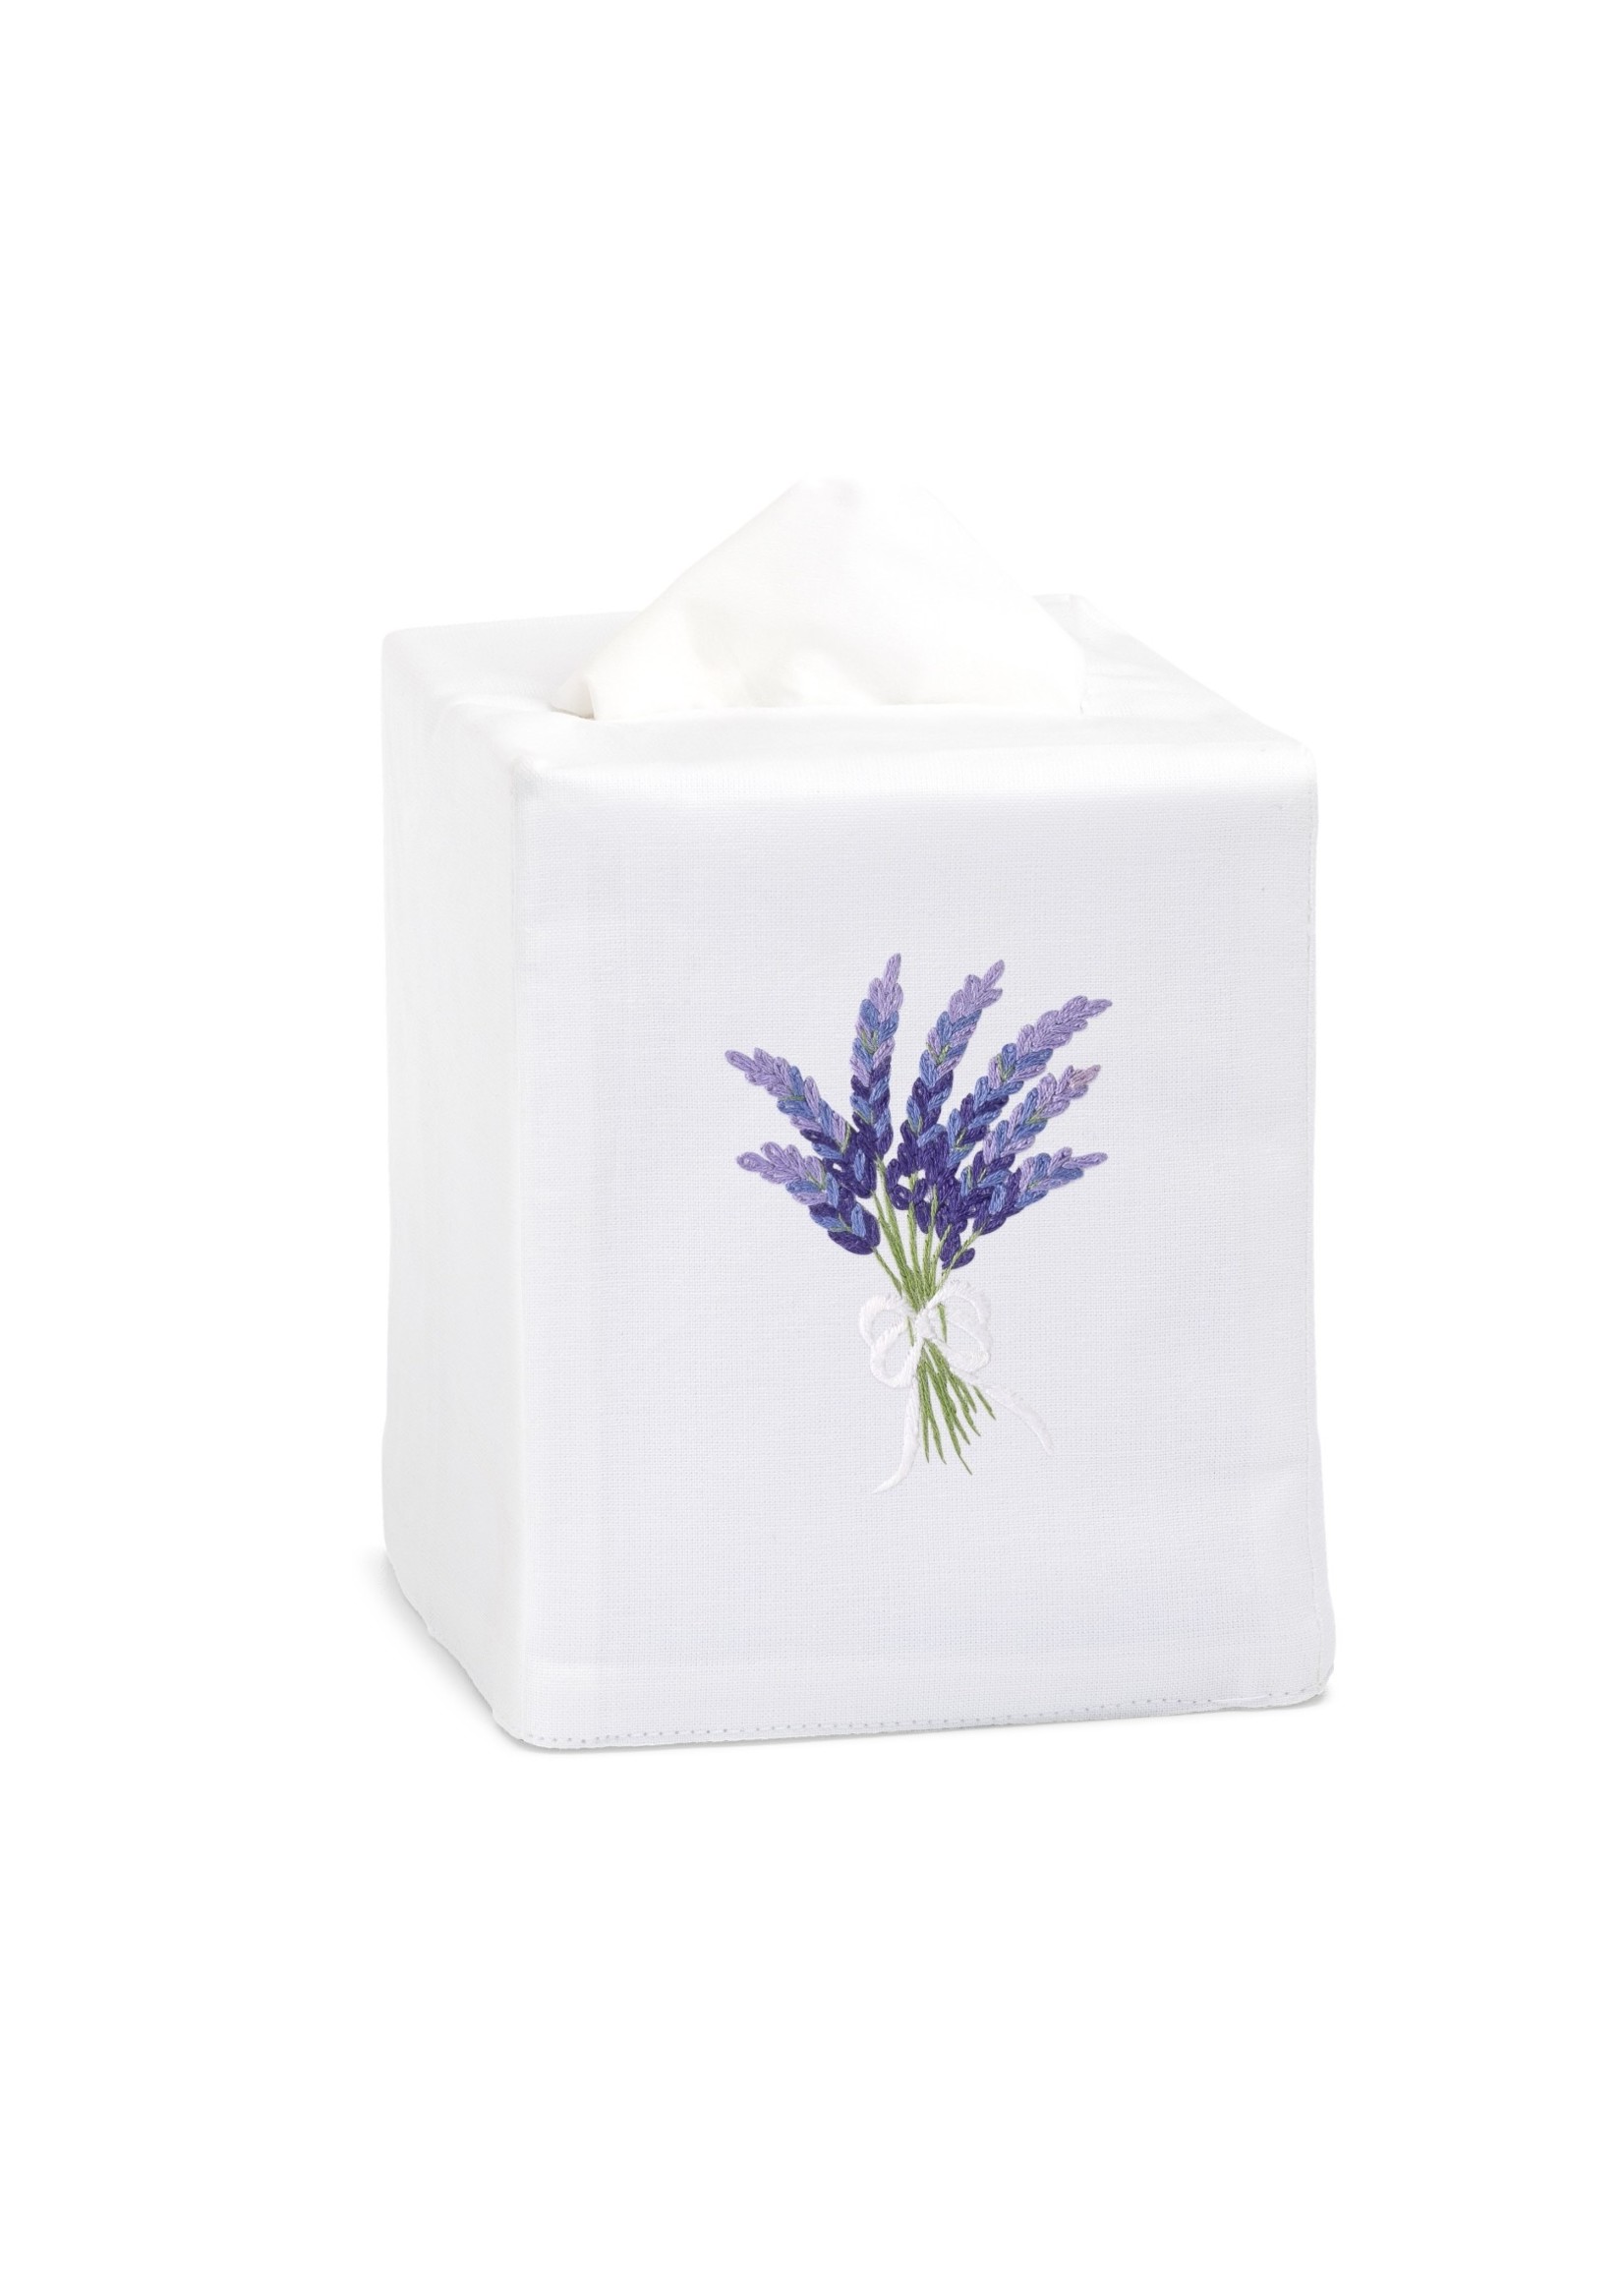 Henry Handwork Tissue Box Cover - Lavender